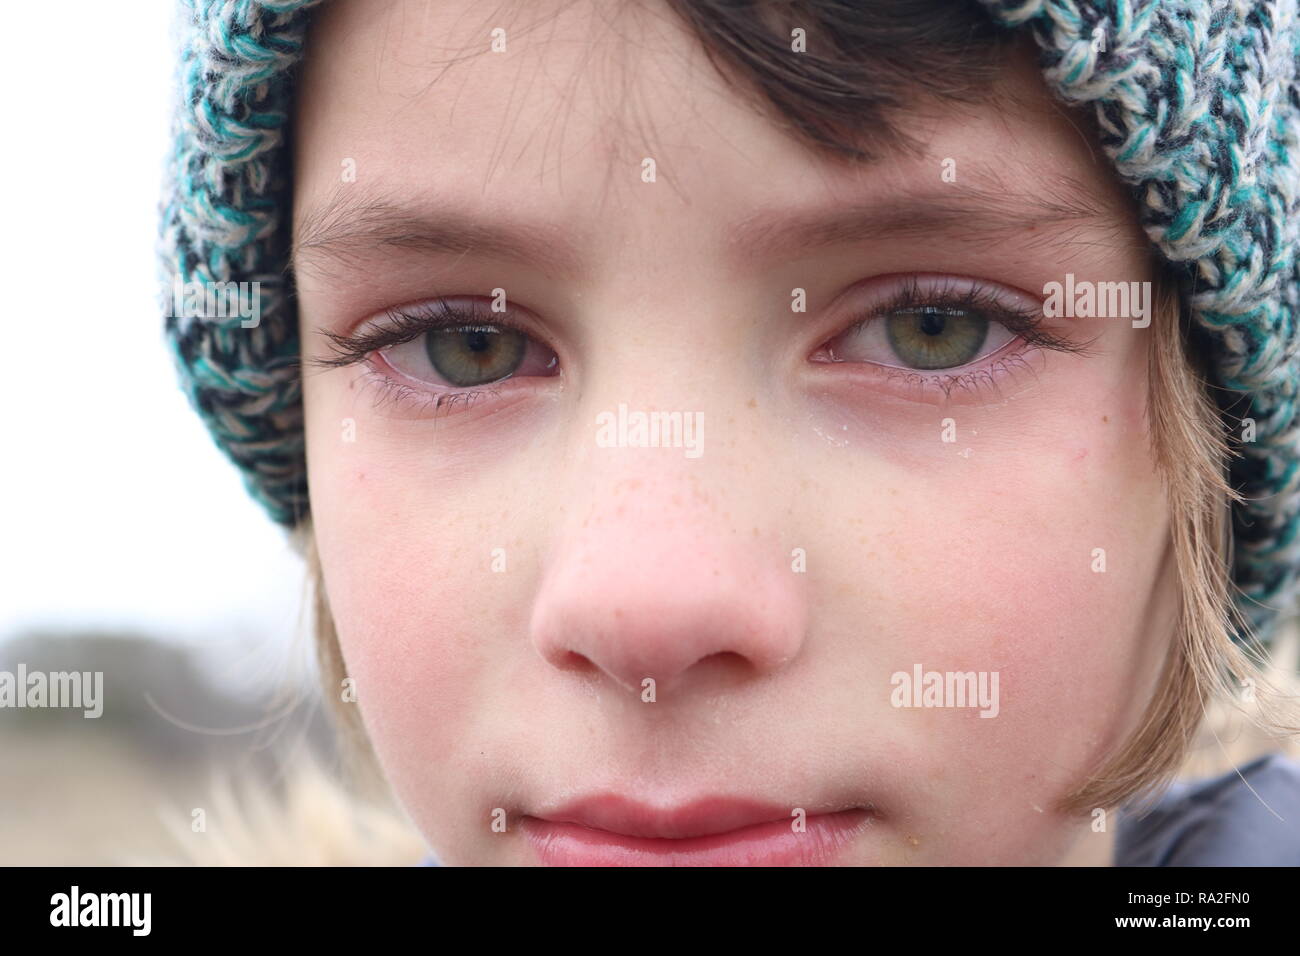 Libre d'une petite fille aux yeux verts frustrés qui se trouve à proximité de larmes Banque D'Images